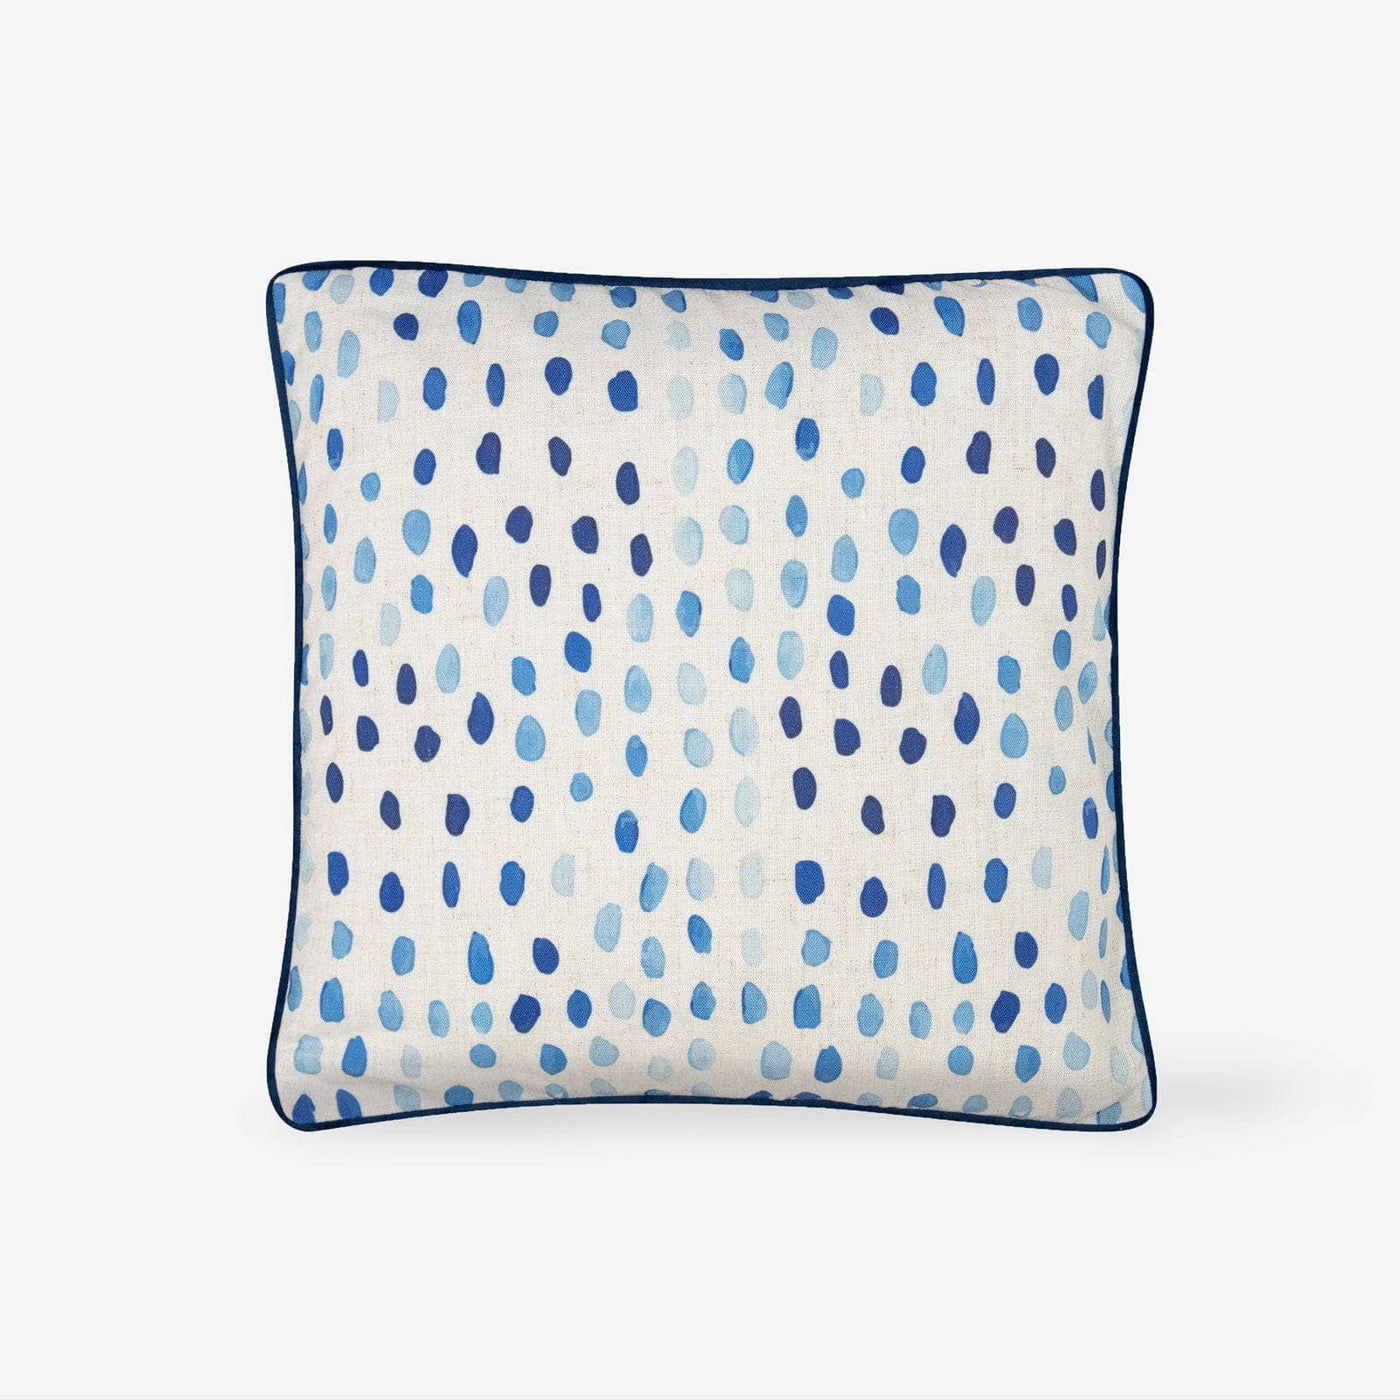 Lucy Drop Cushion, Blue, 45x45 cm 1